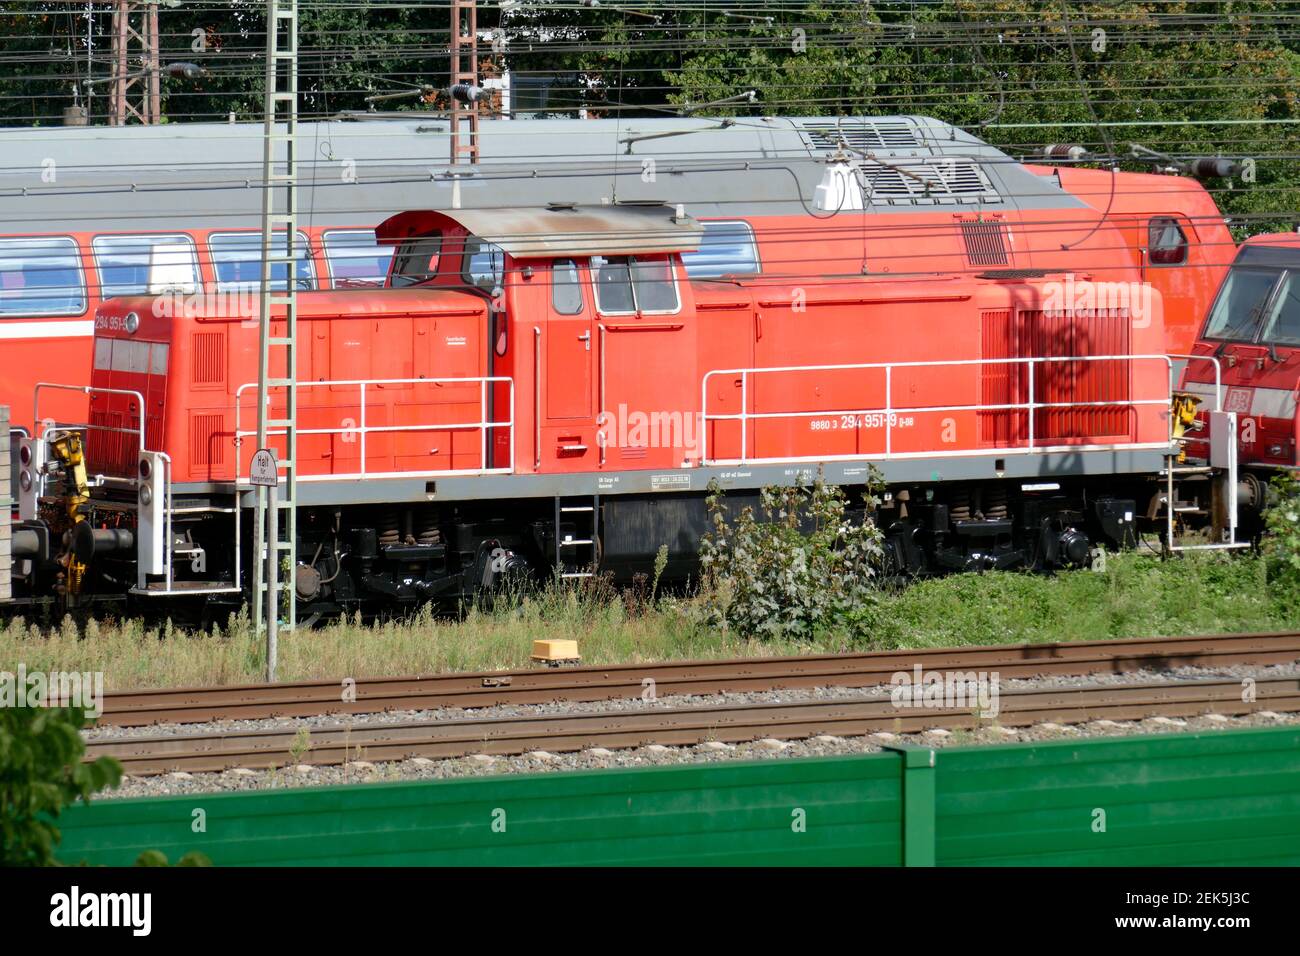 Locomotive diesel rouge, trains locaux, installations ferroviaires, barrière sonore verte , Brême, Allemagne Banque D'Images